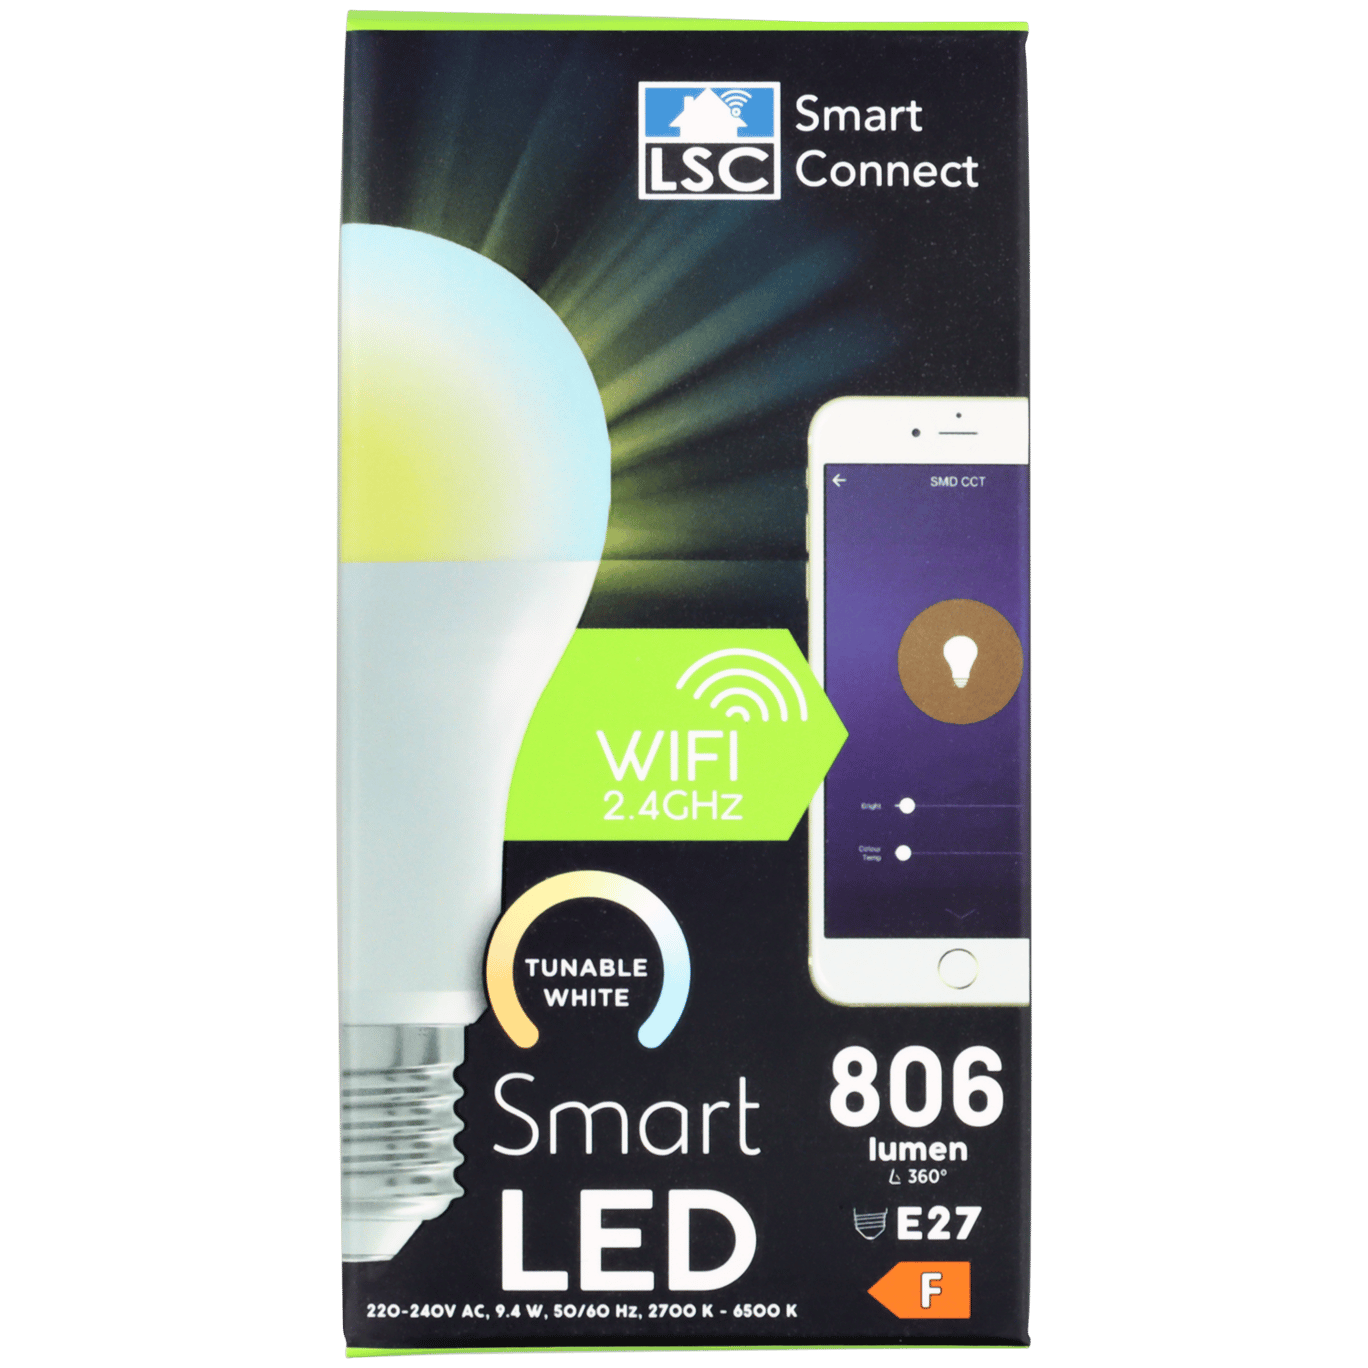 Figuur Erfenis Miniatuur LSC Smart Connect slimme ledlamp | Action.com